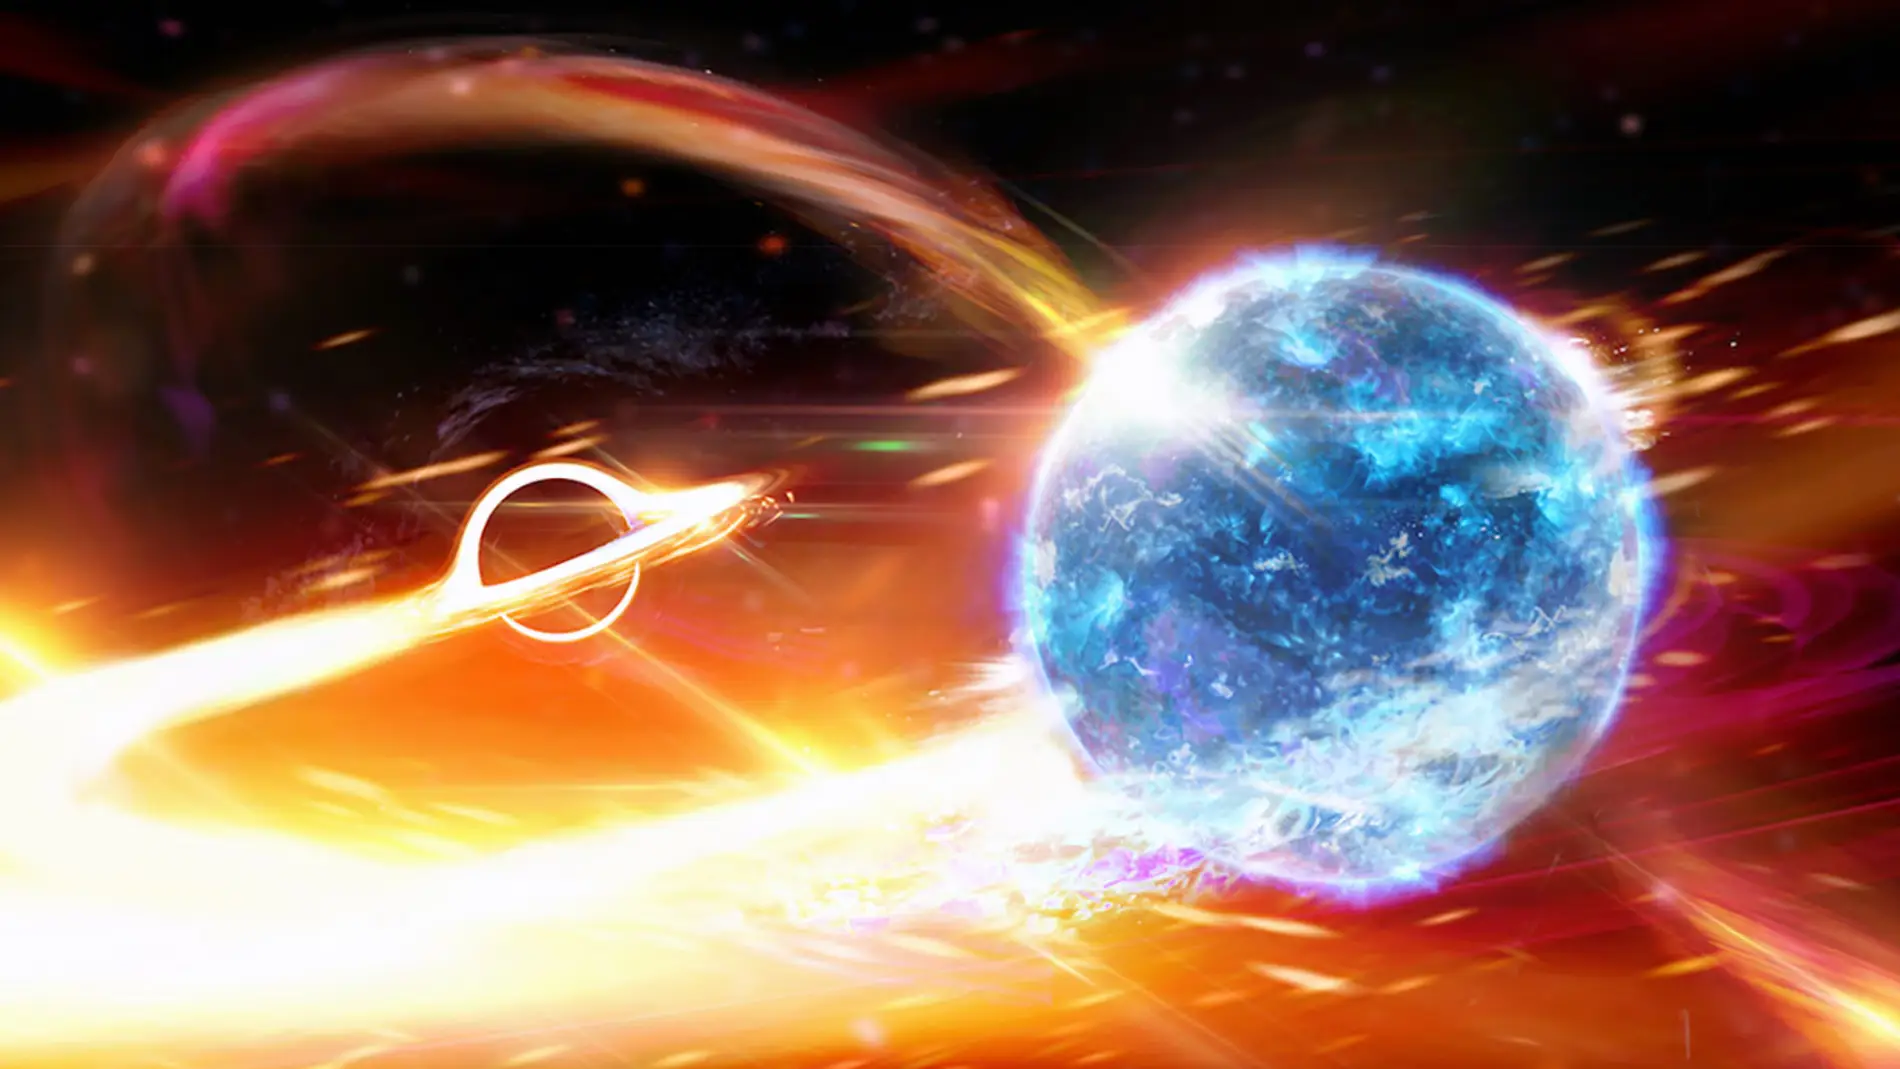 Recreación artística de una fusión de agujero negro y estrella de neutrones